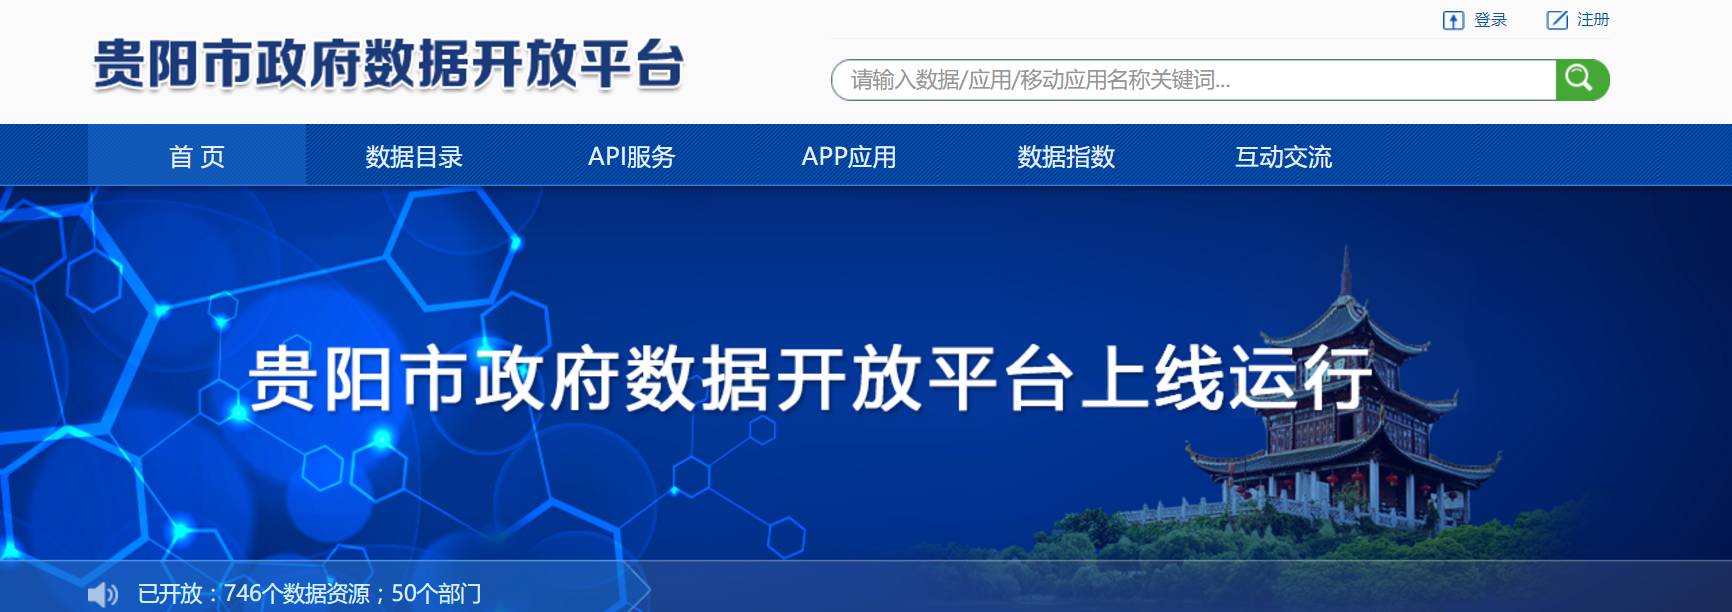 贵阳市政府数据开放平台上线运行